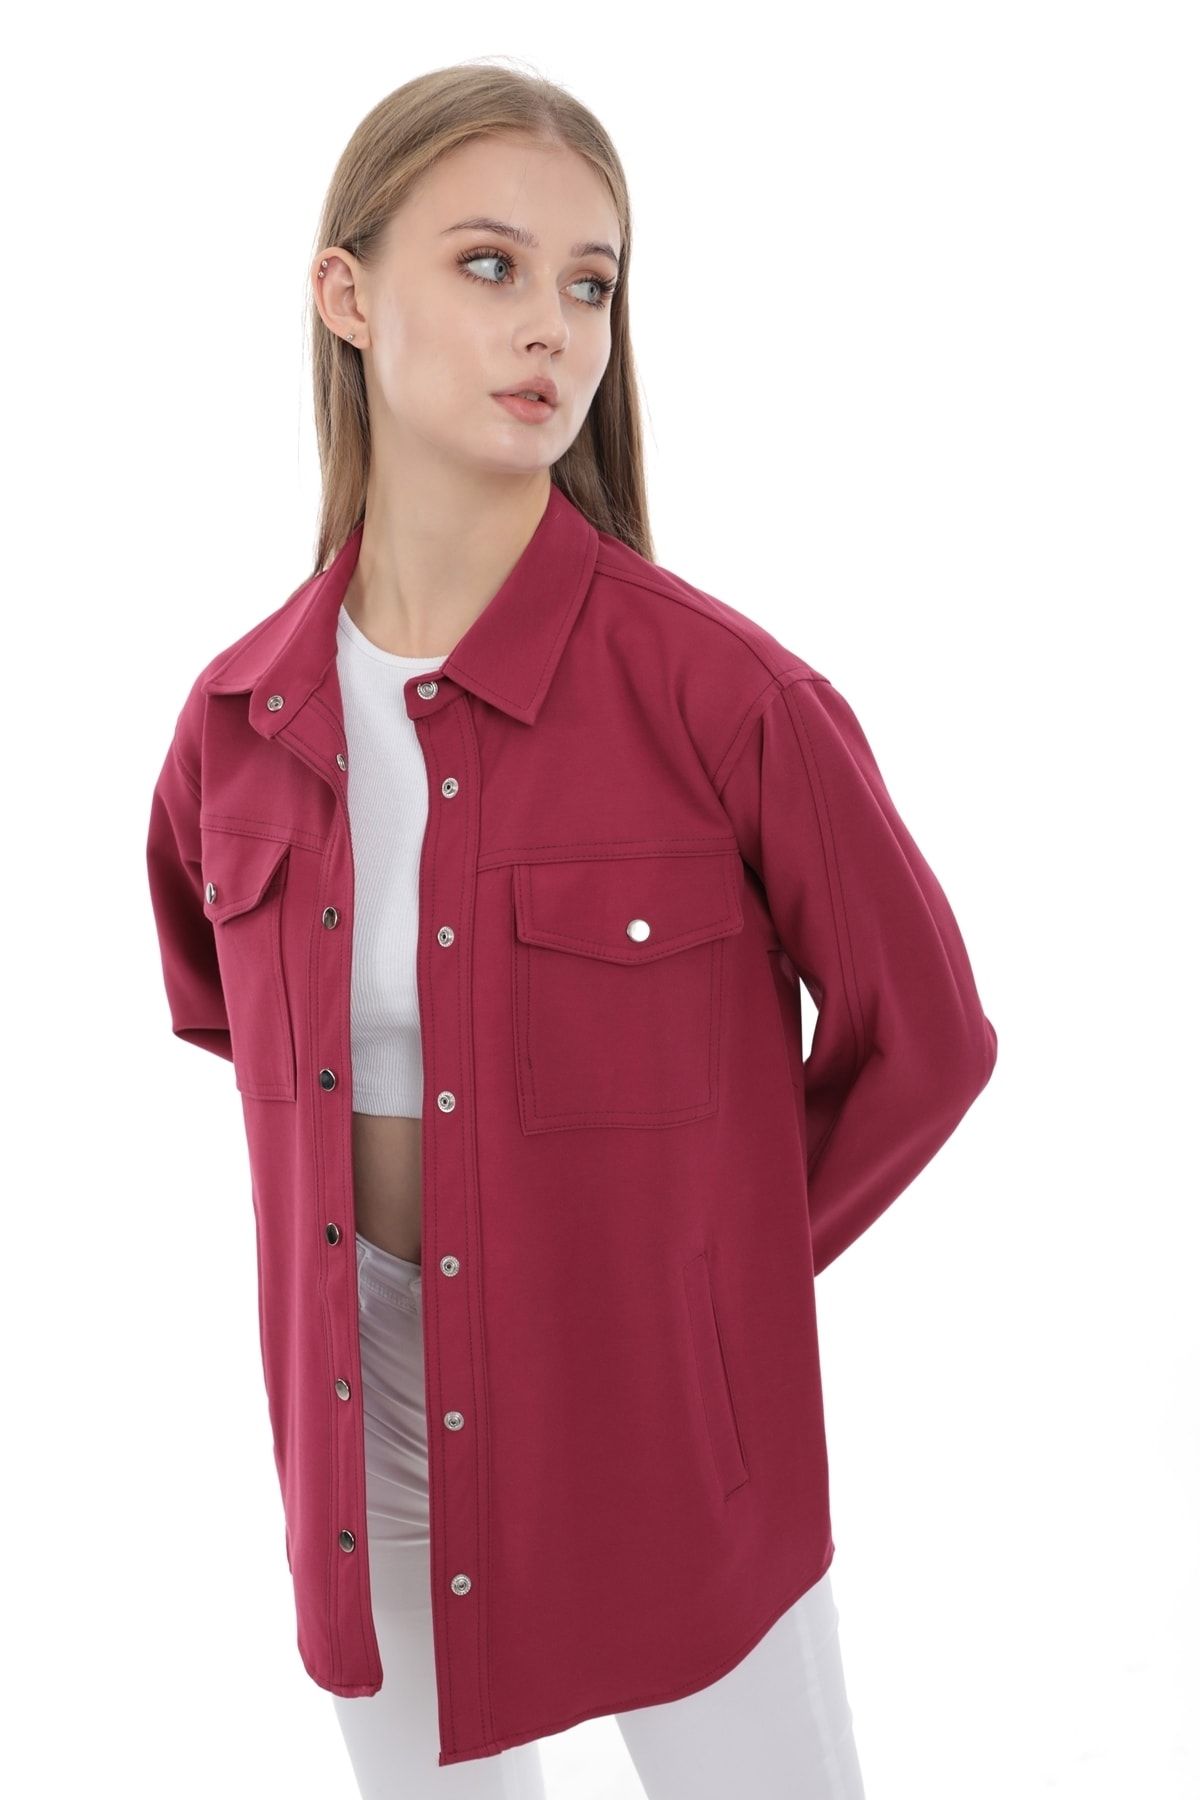 MD trend Kadın Fuşya Cepli Çıtçıt Kapamalı Oversize Gömlek Ceket